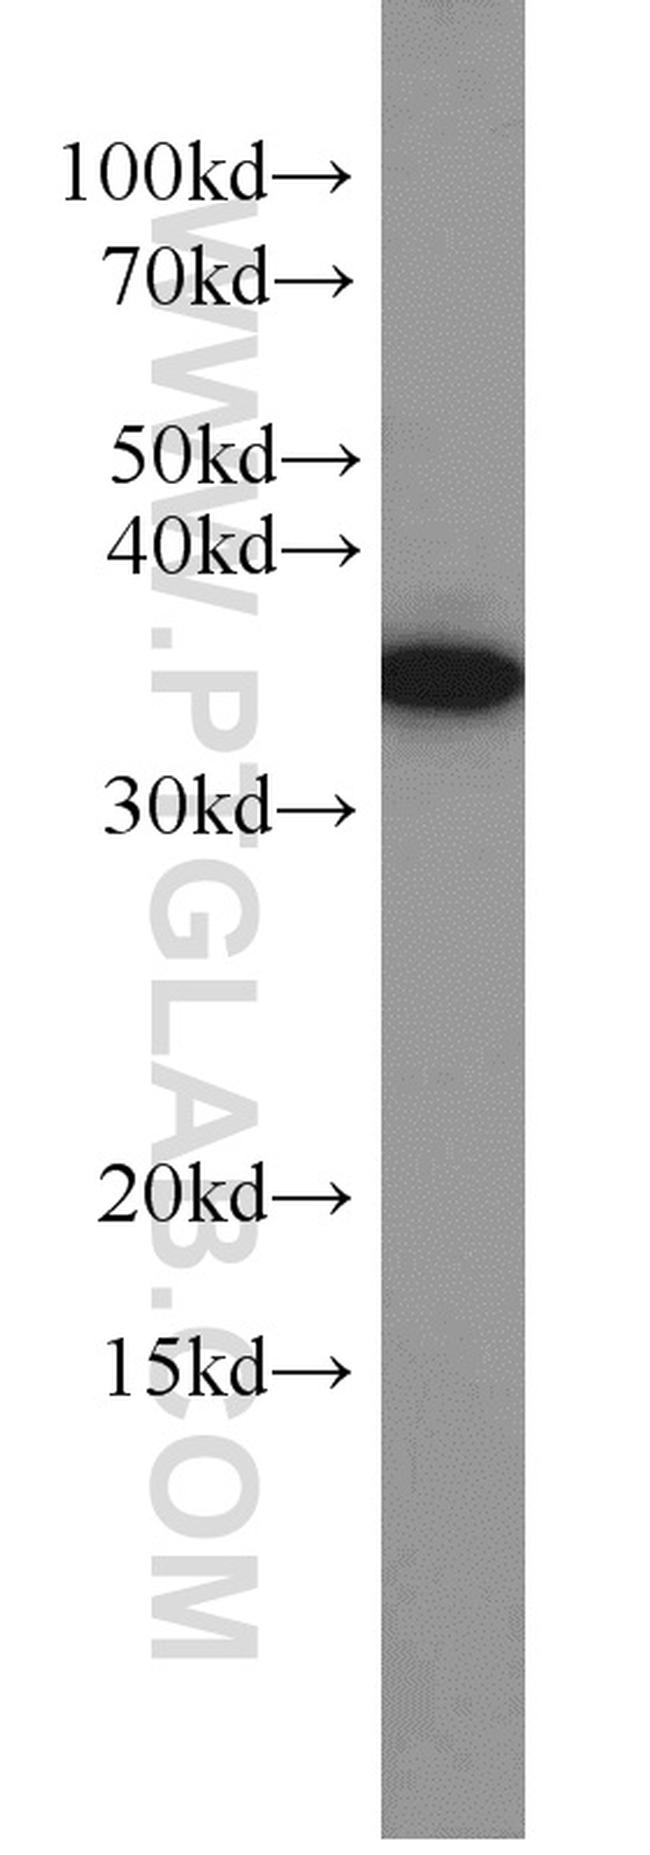 TRNAU1AP/SECP43 Antibody in Western Blot (WB)